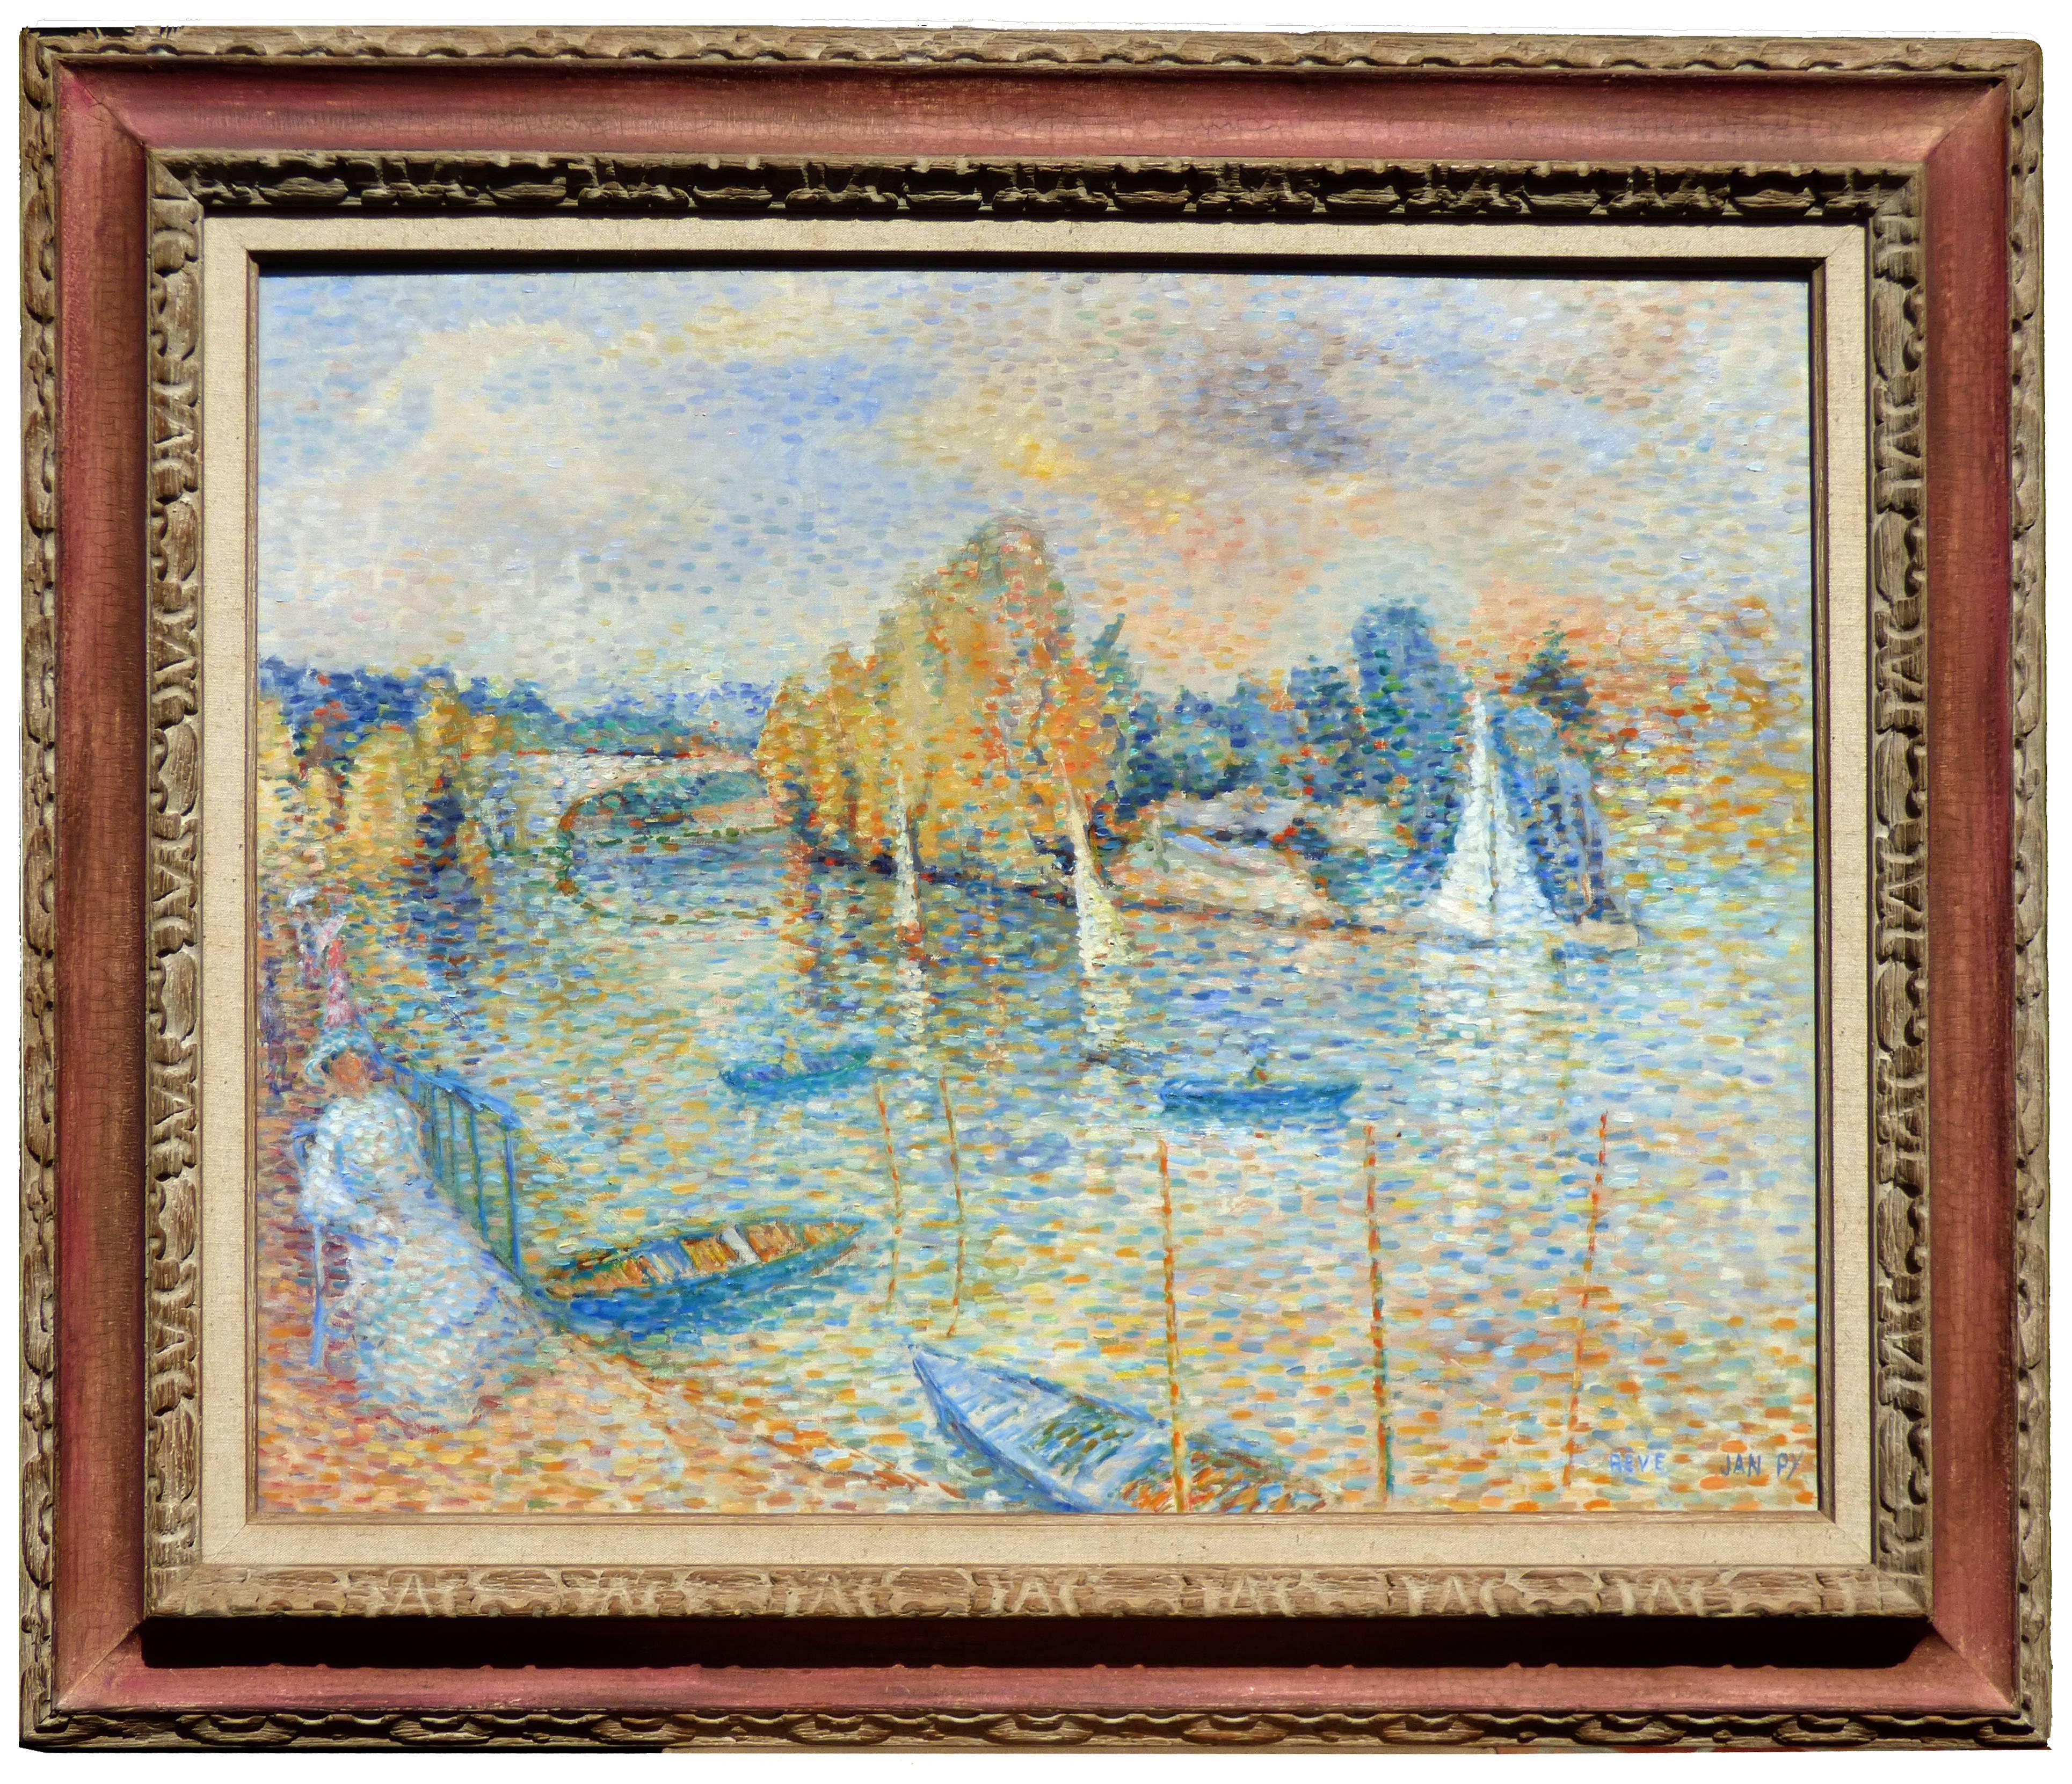 Pointillist Dream near the Seine River in France - Post-Impressionist Painting by Jean-Pierre Eirisch